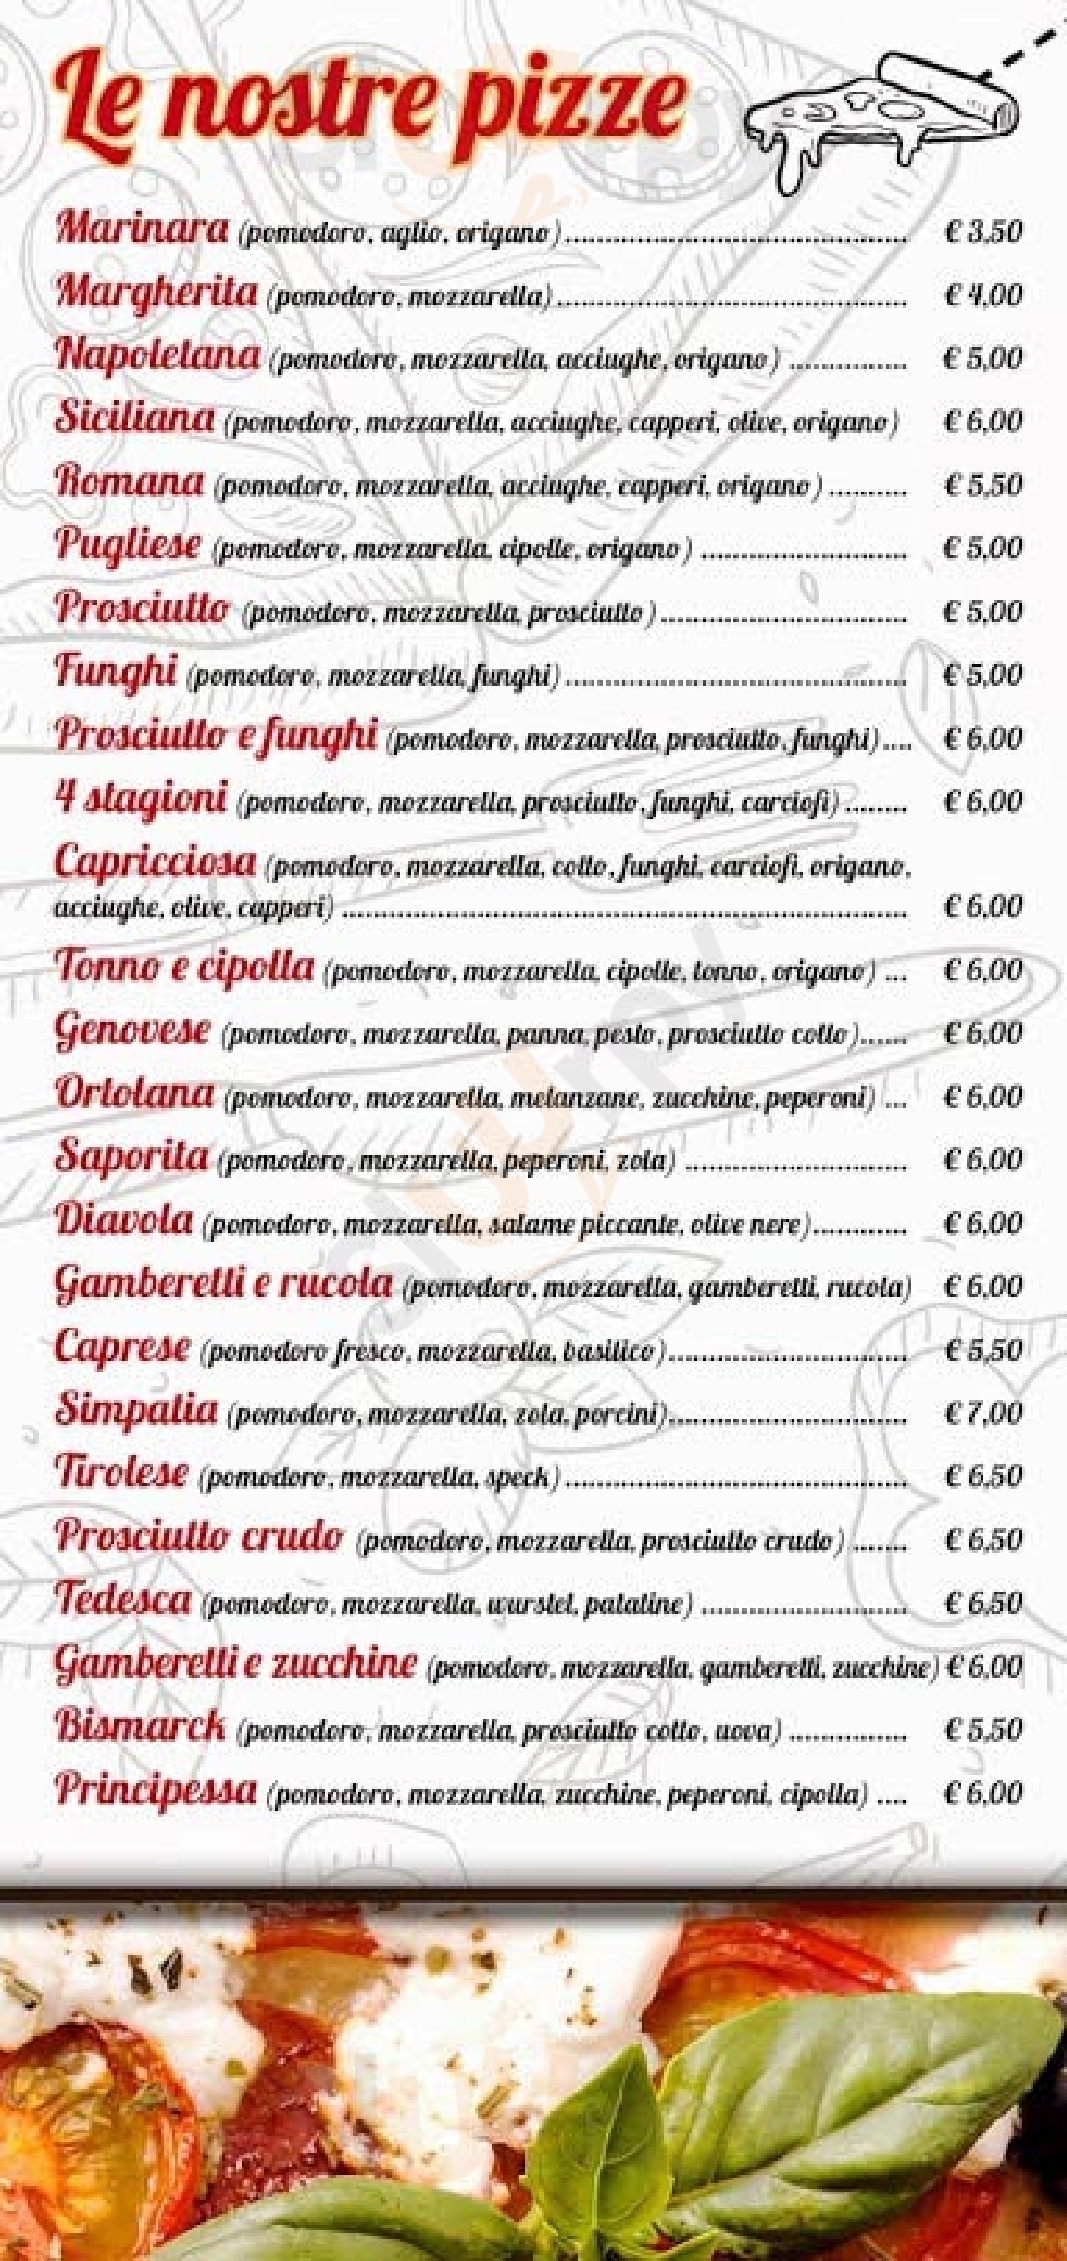 Trattoria Pizzeria Al Posto Giusto Milano menù 1 pagina